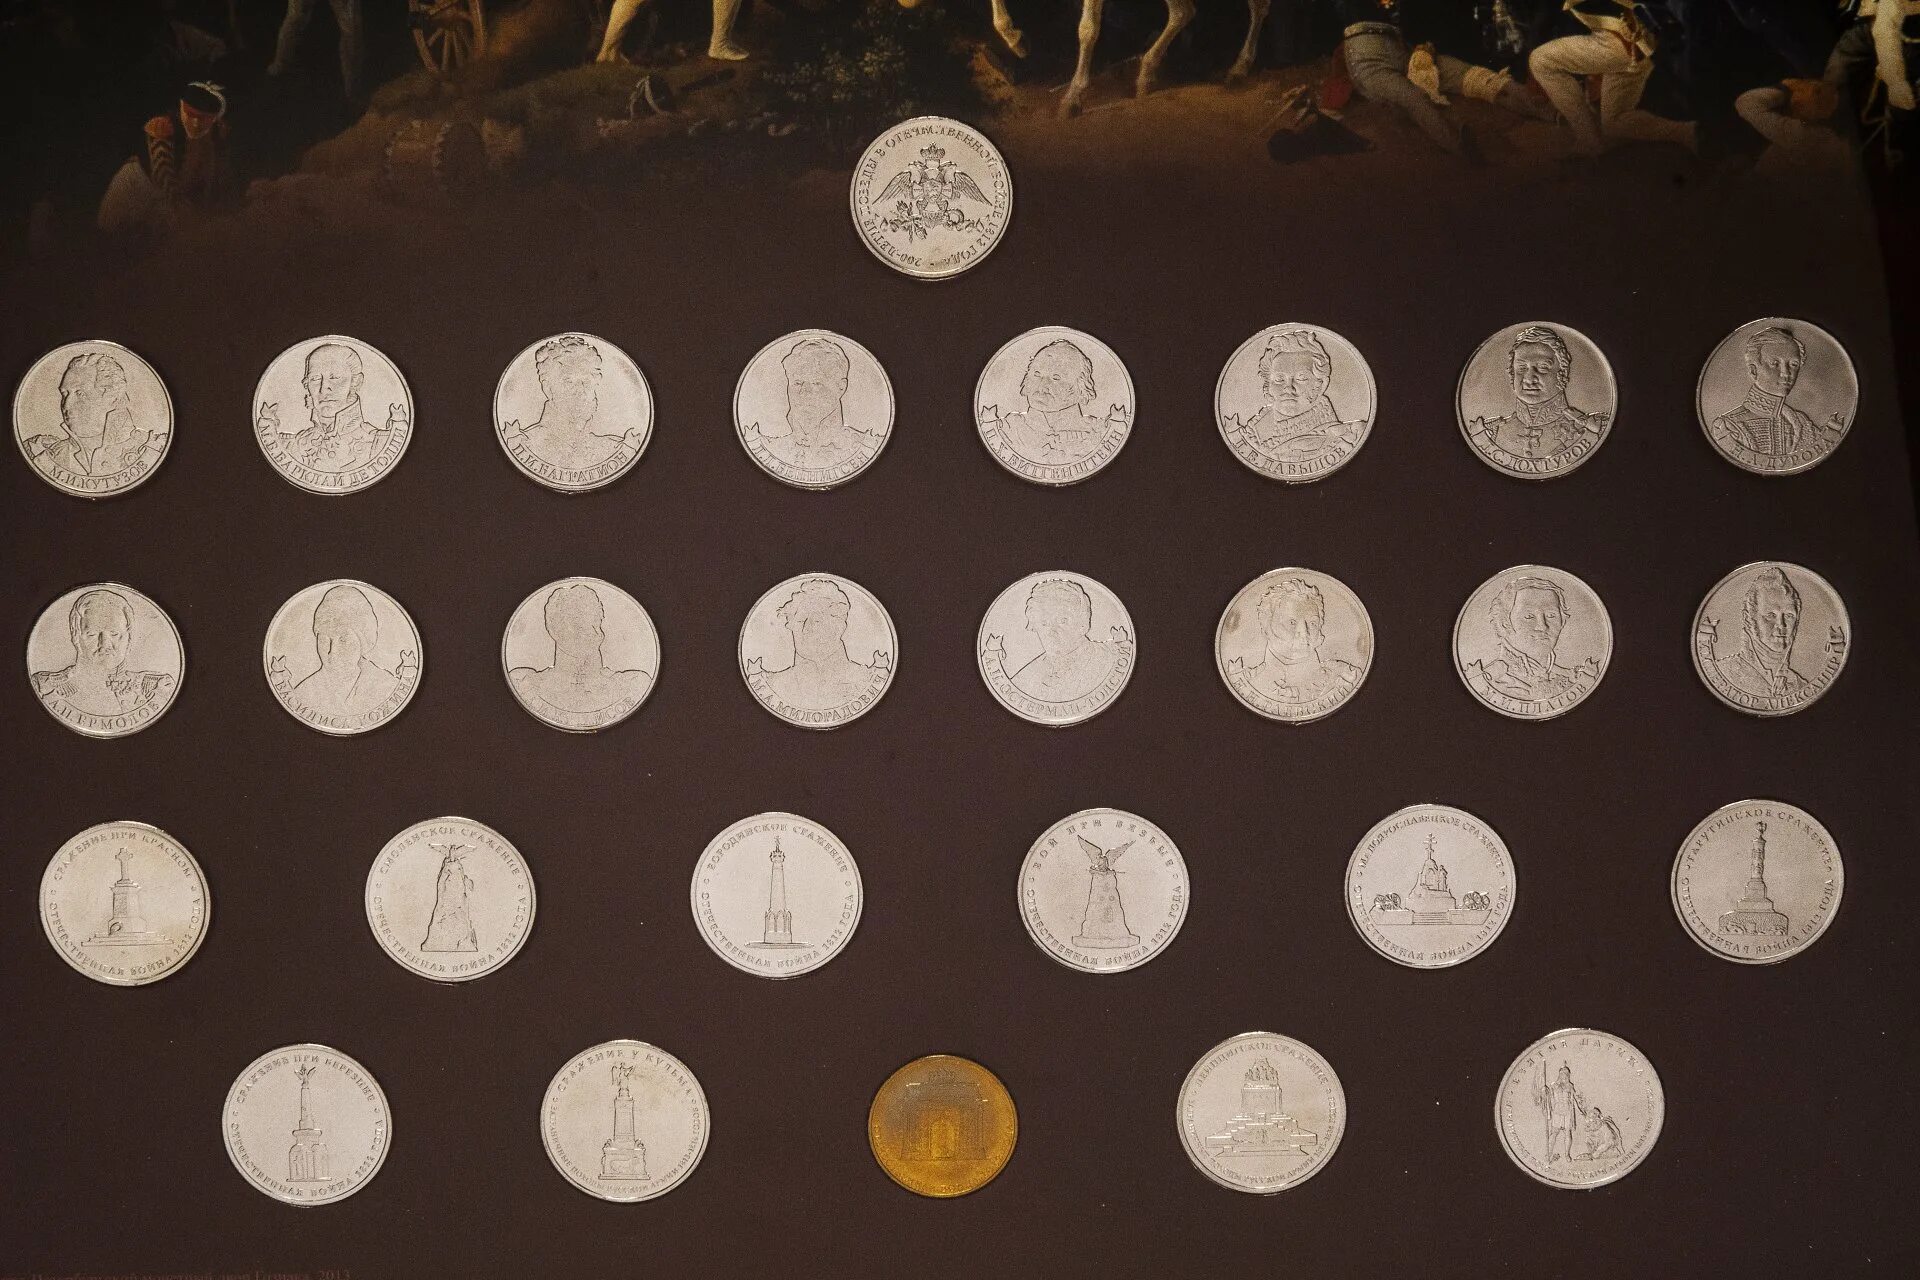 200 Лет Победы в Отечественной войне 1812 года набор монет. Монеты 200 лет Отечественной войне 1812 года. Коллекция монет 1812 25 рублей.